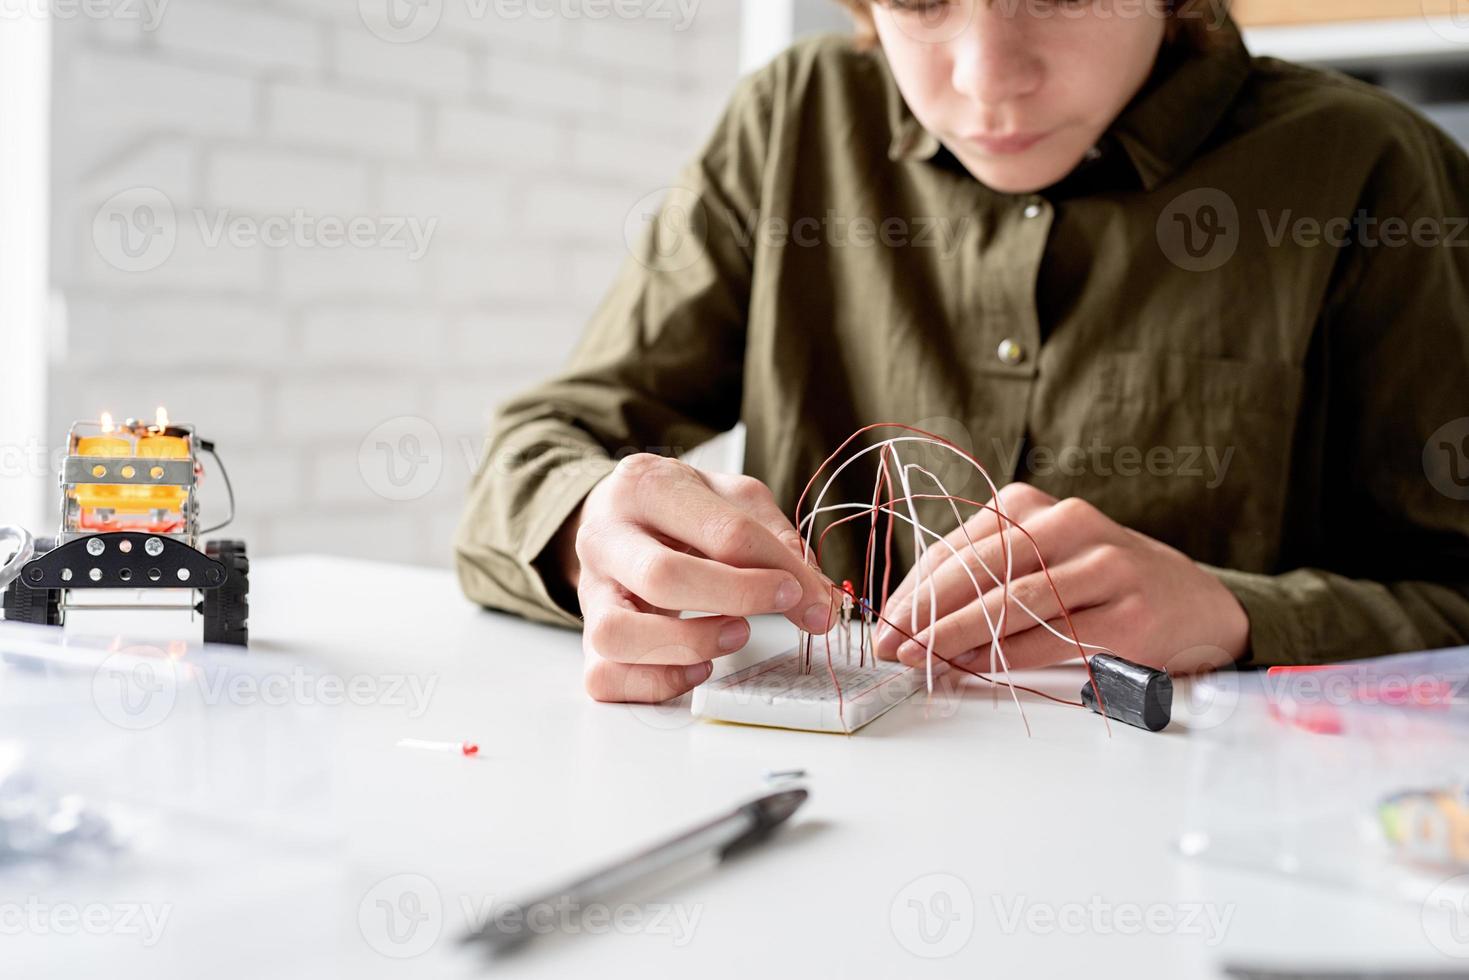 pojke som arbetar med led-lampor på experimentbrädan för vetenskapsprojekt foto